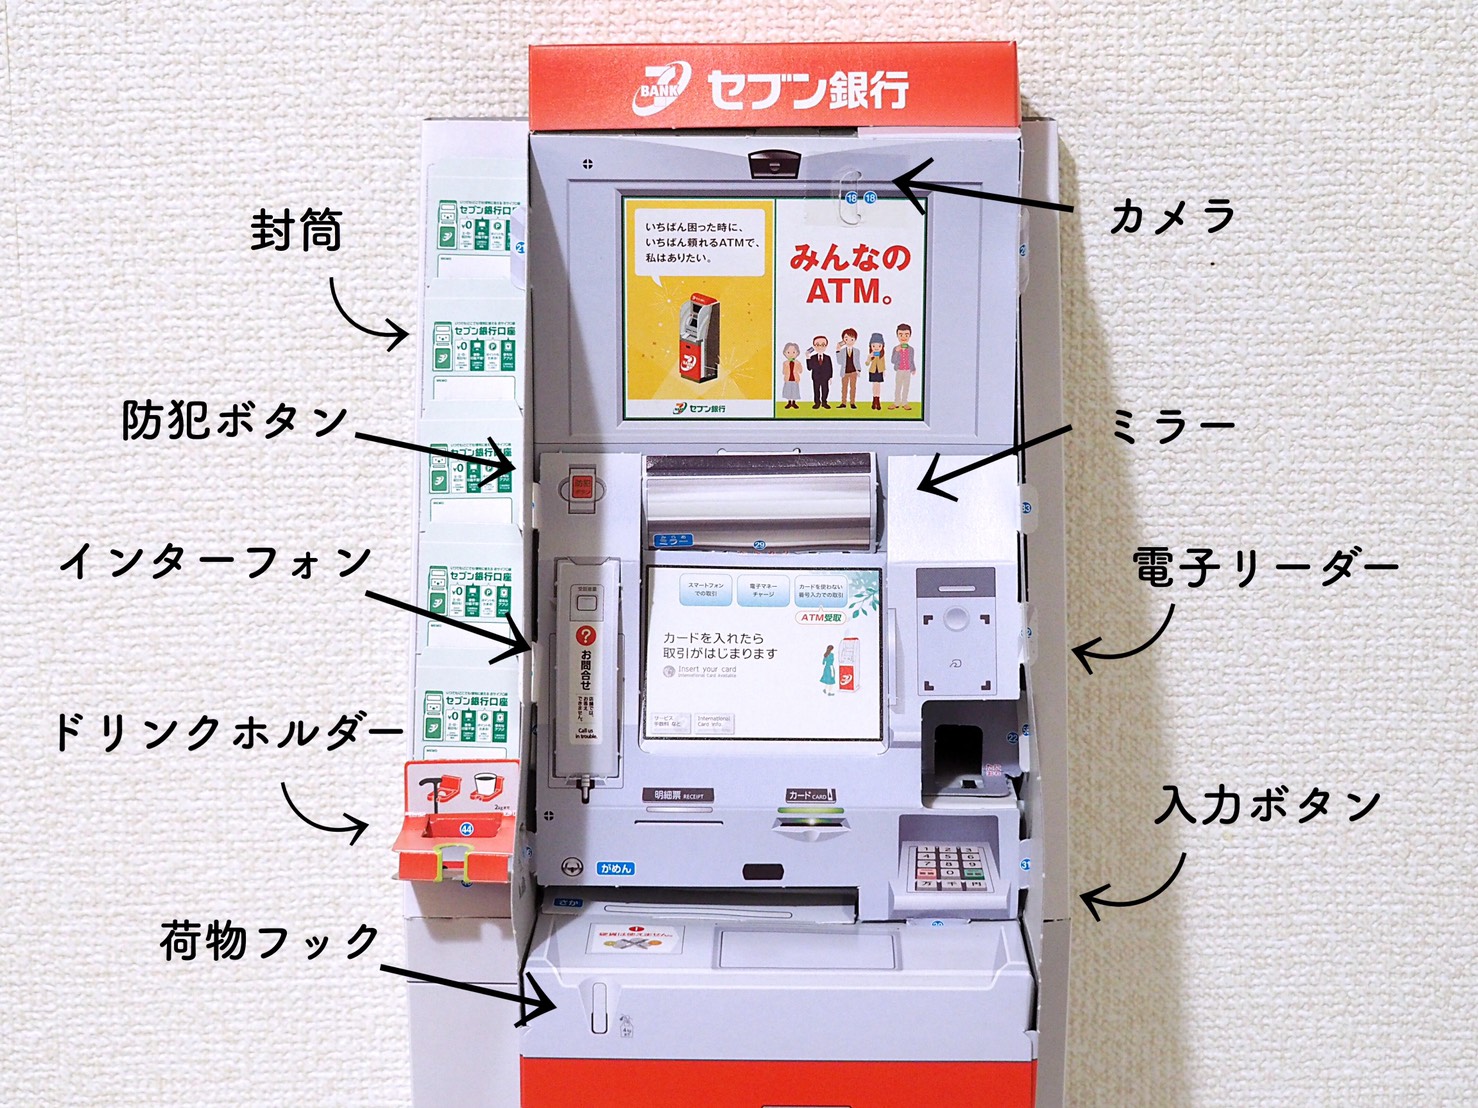 幼稚園』9月号付録「セブン銀行ATM」は本格的すぎて大人も感動する